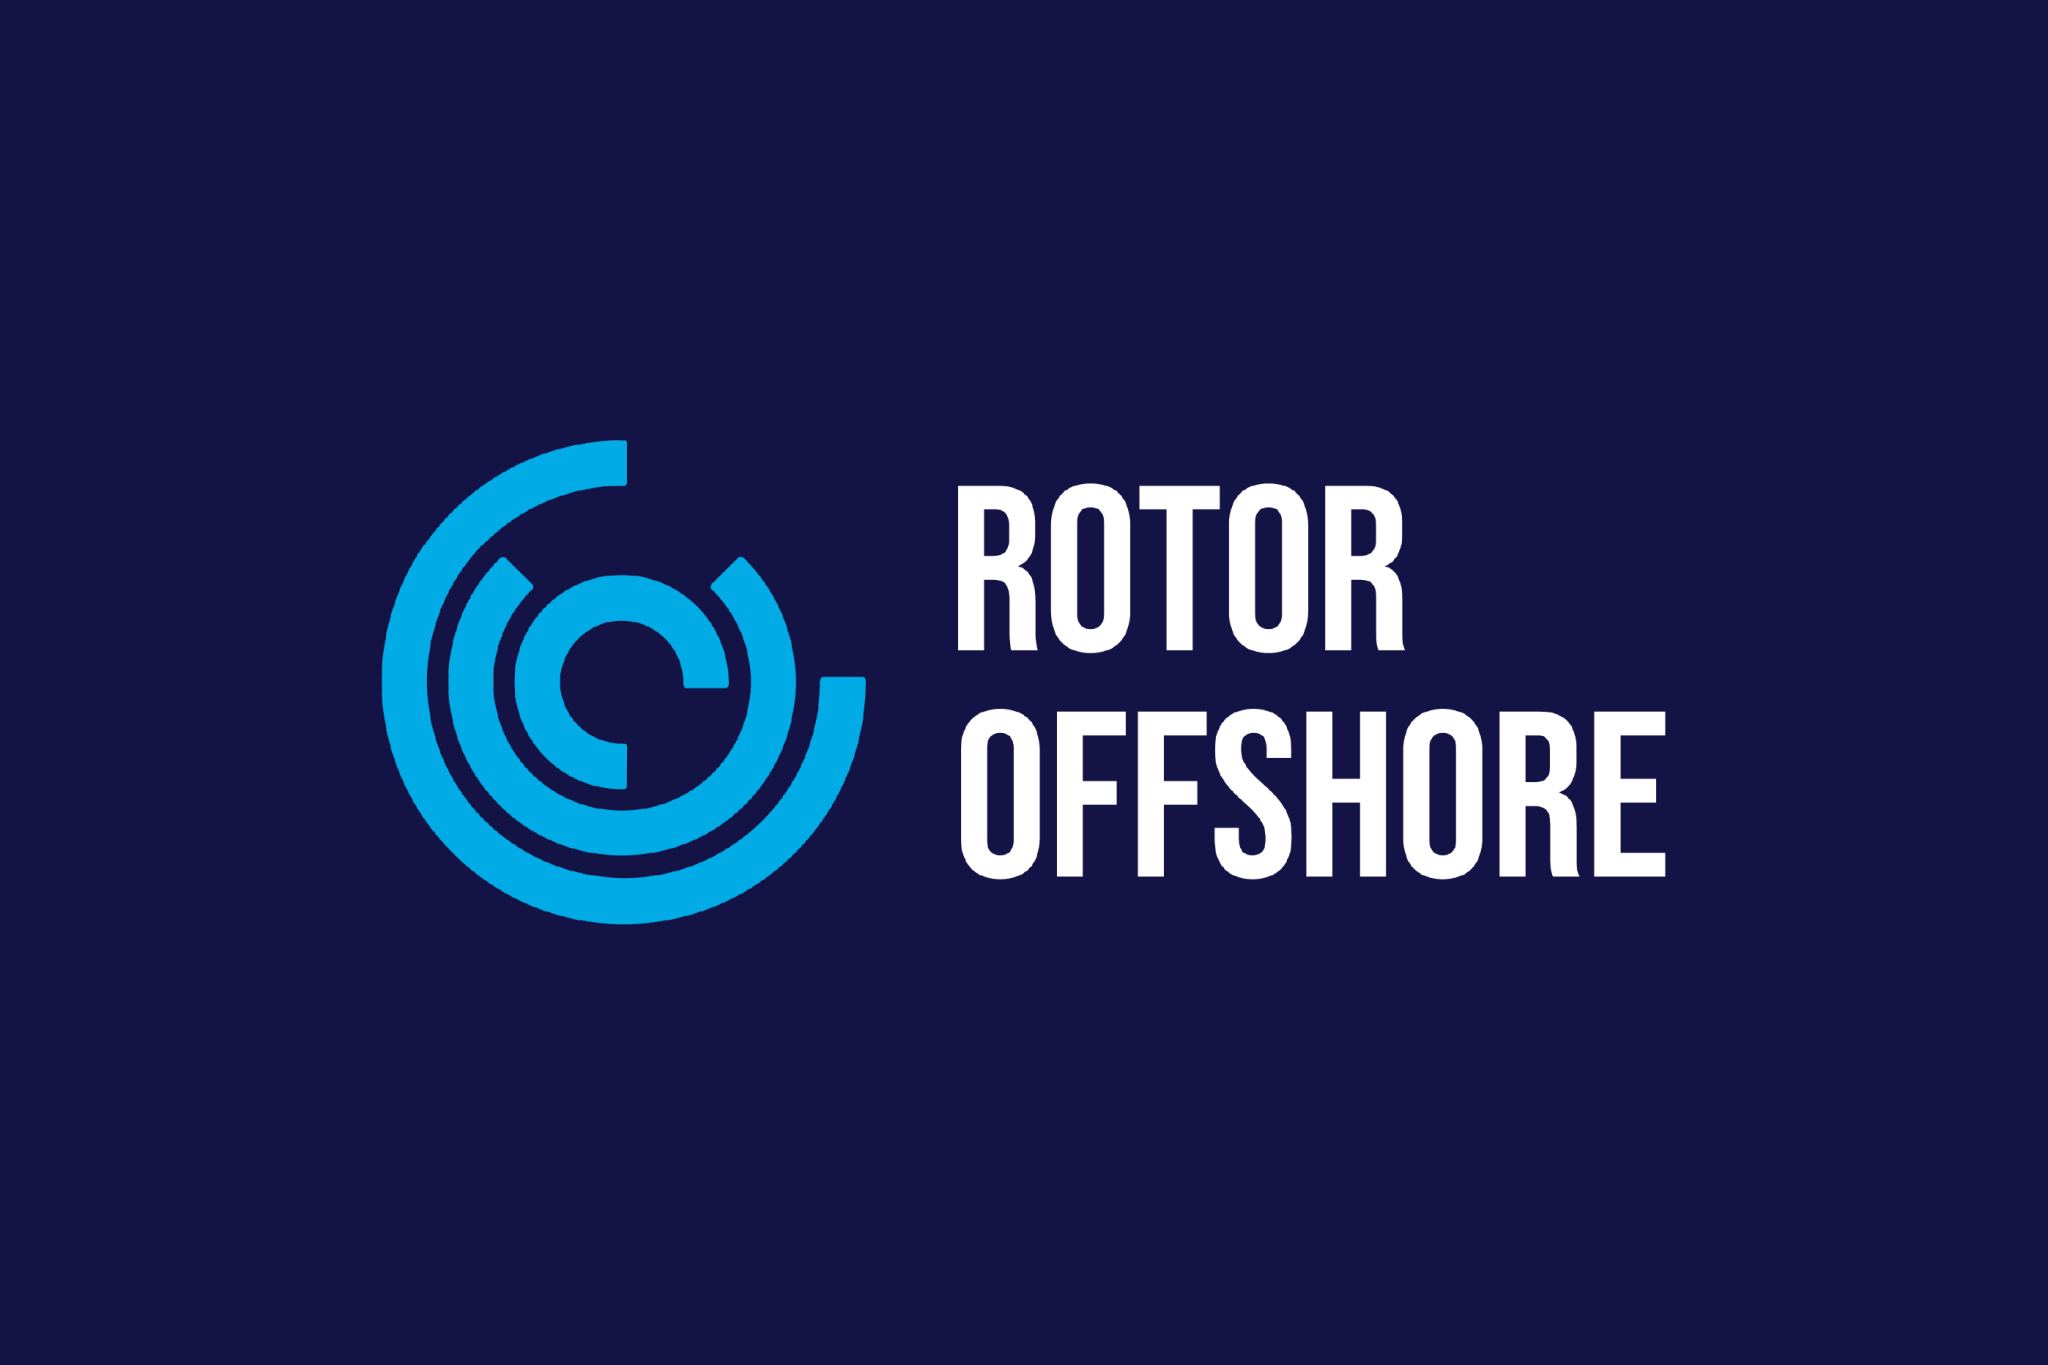 Rotor Offshore sin logo på en mørkeblå bakgrunn